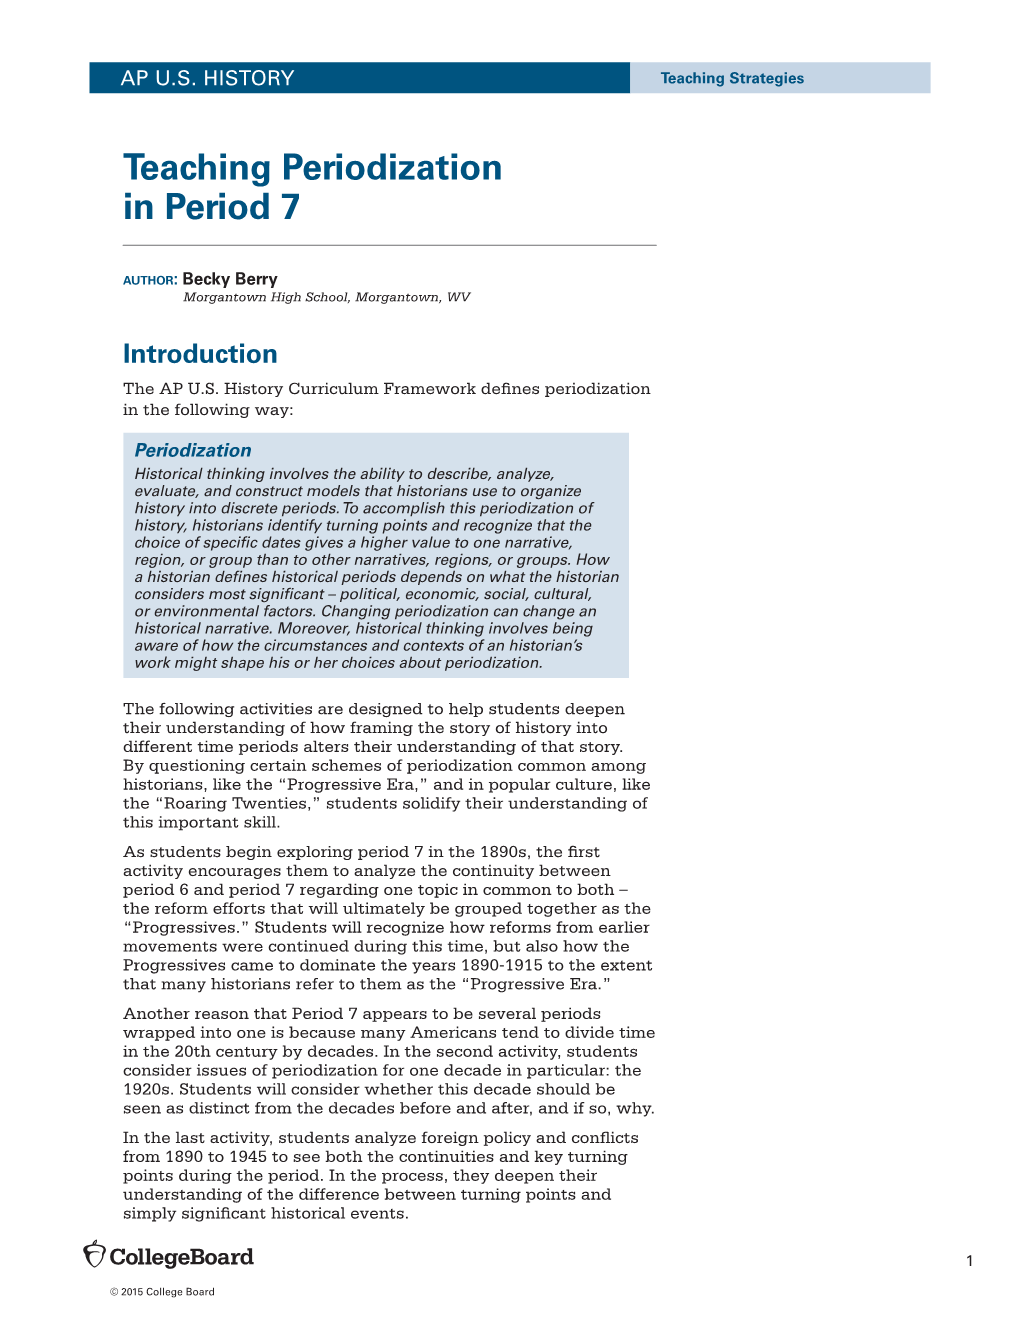 AP U.S. HISTORY Teaching Periodization in Period 7